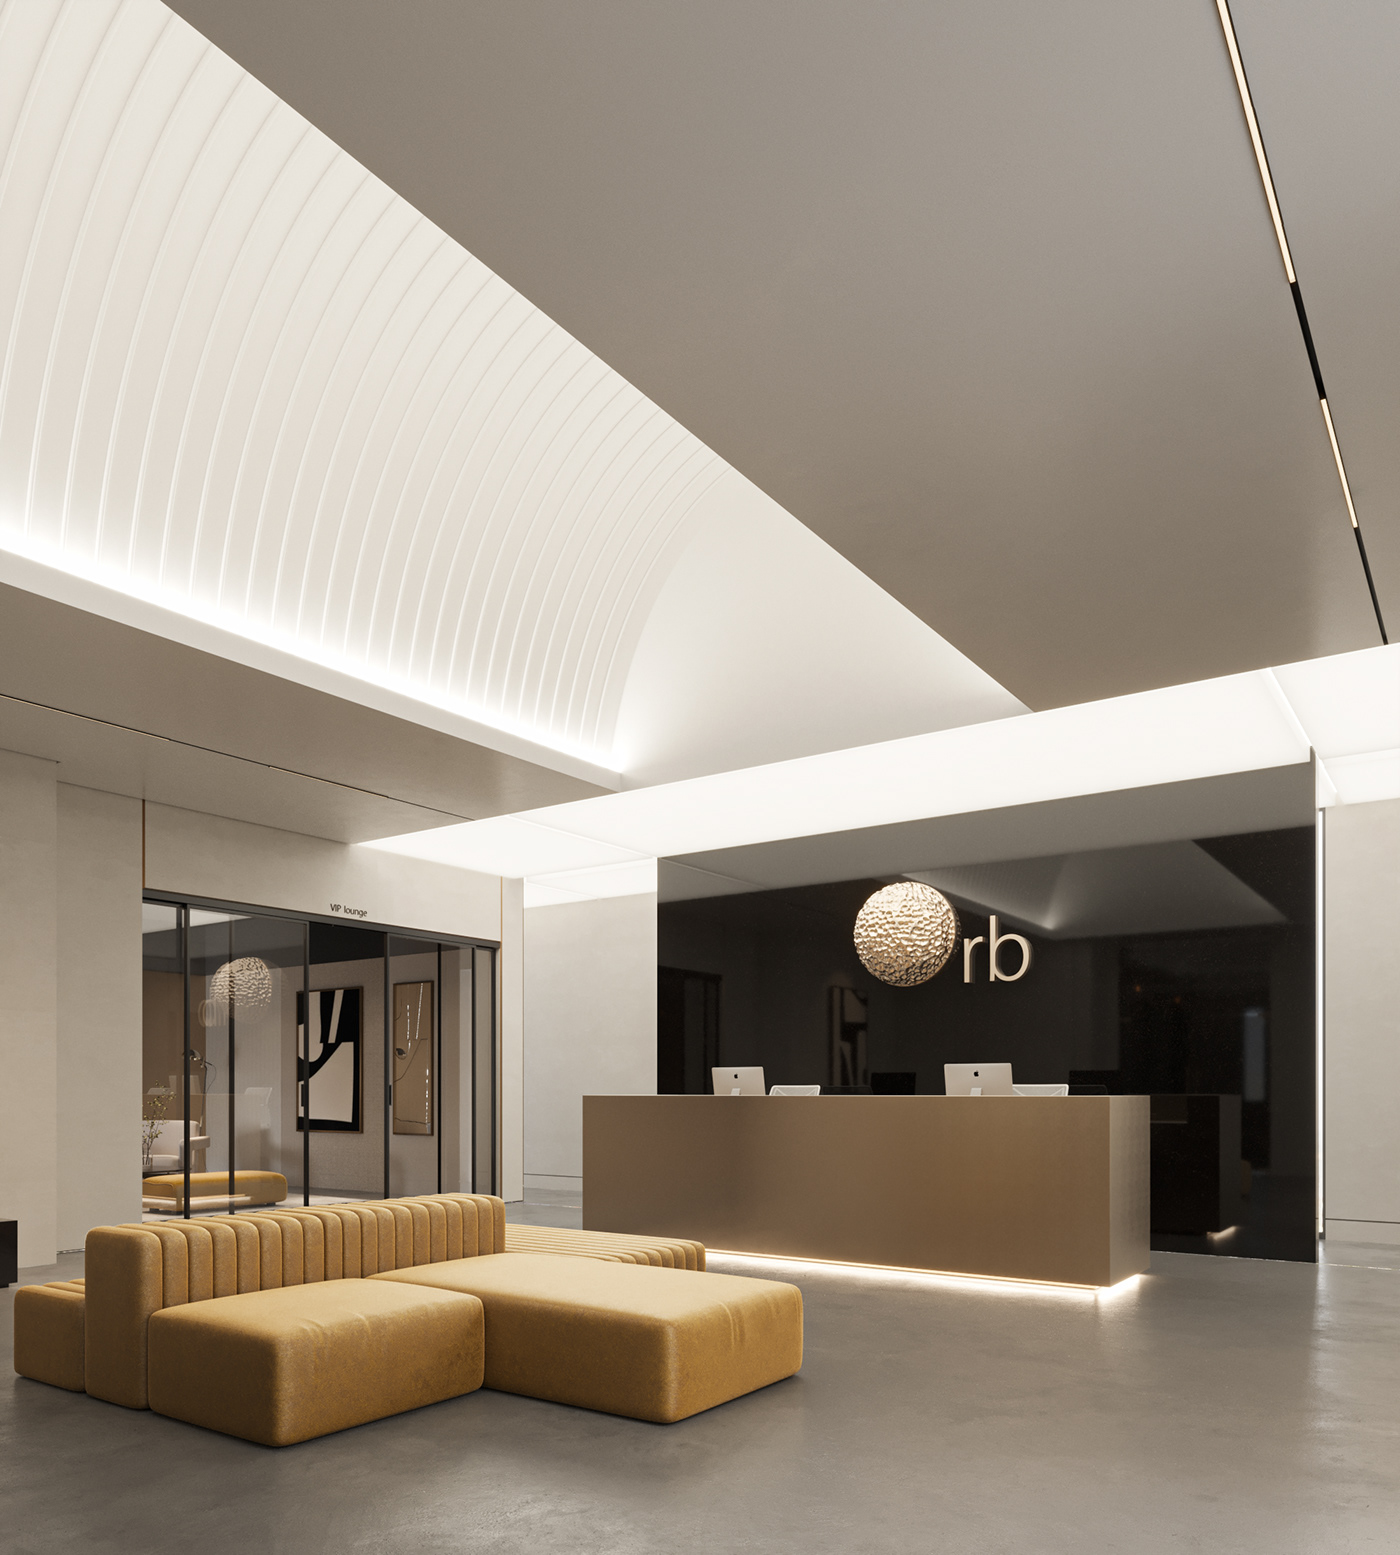 bw Interior interior design  minimal modern monochrome reception Render sleek visualization